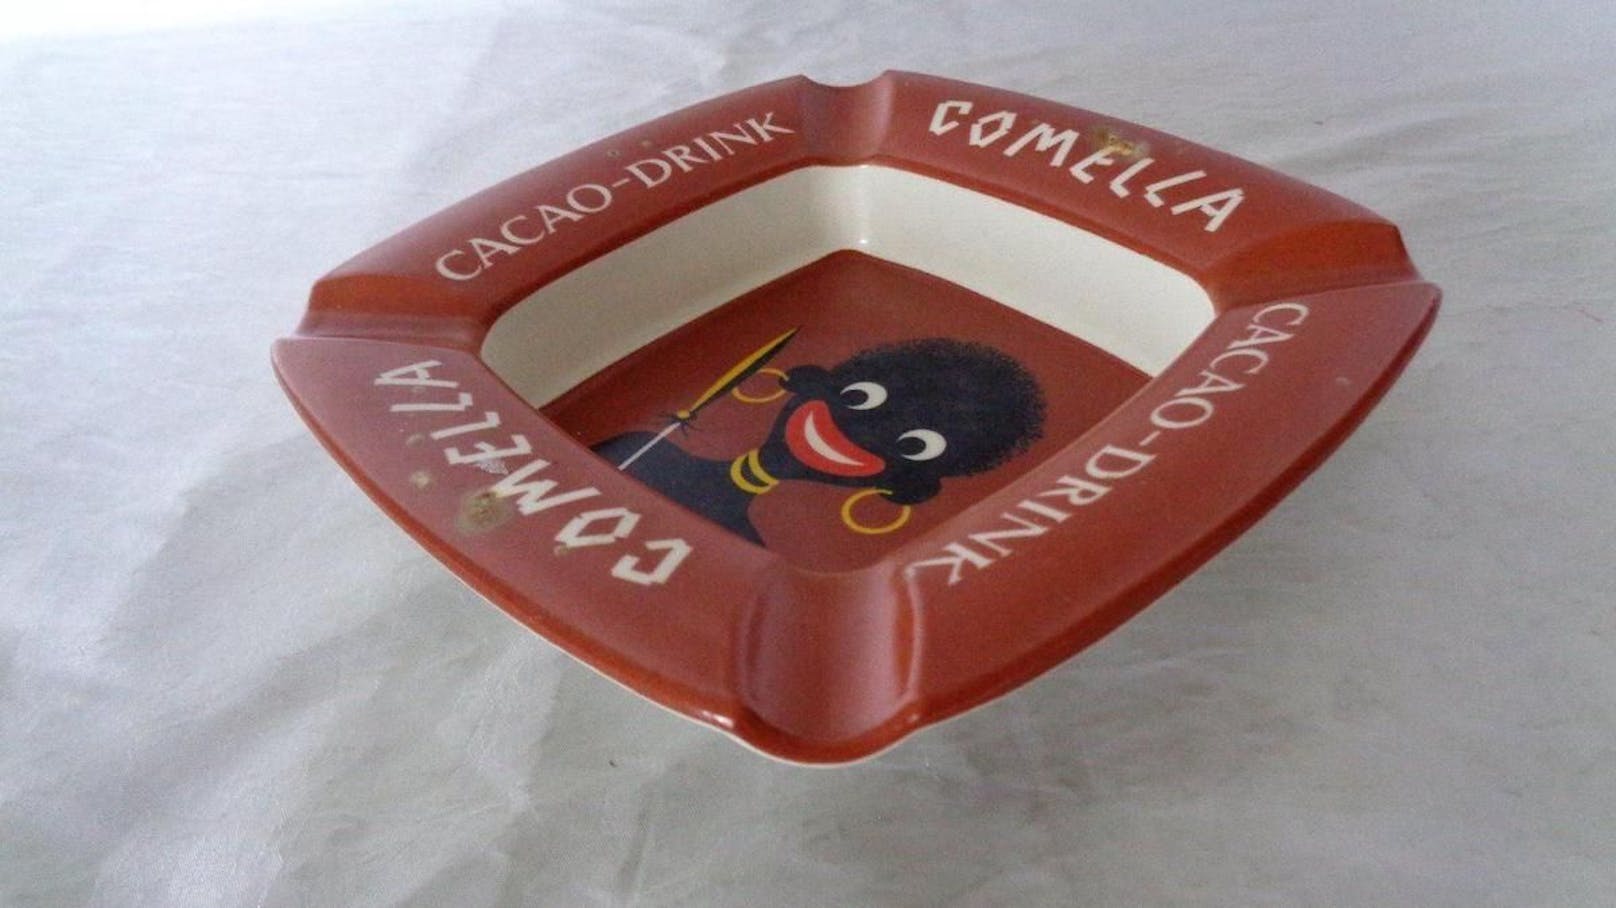 Denn das alte Comella-Logo bediente sich afrikanischer Stereotype: eine schwarze Figur mit roten Lippen, großen Ohrringen, Halsreifen und Speer in der Hand.